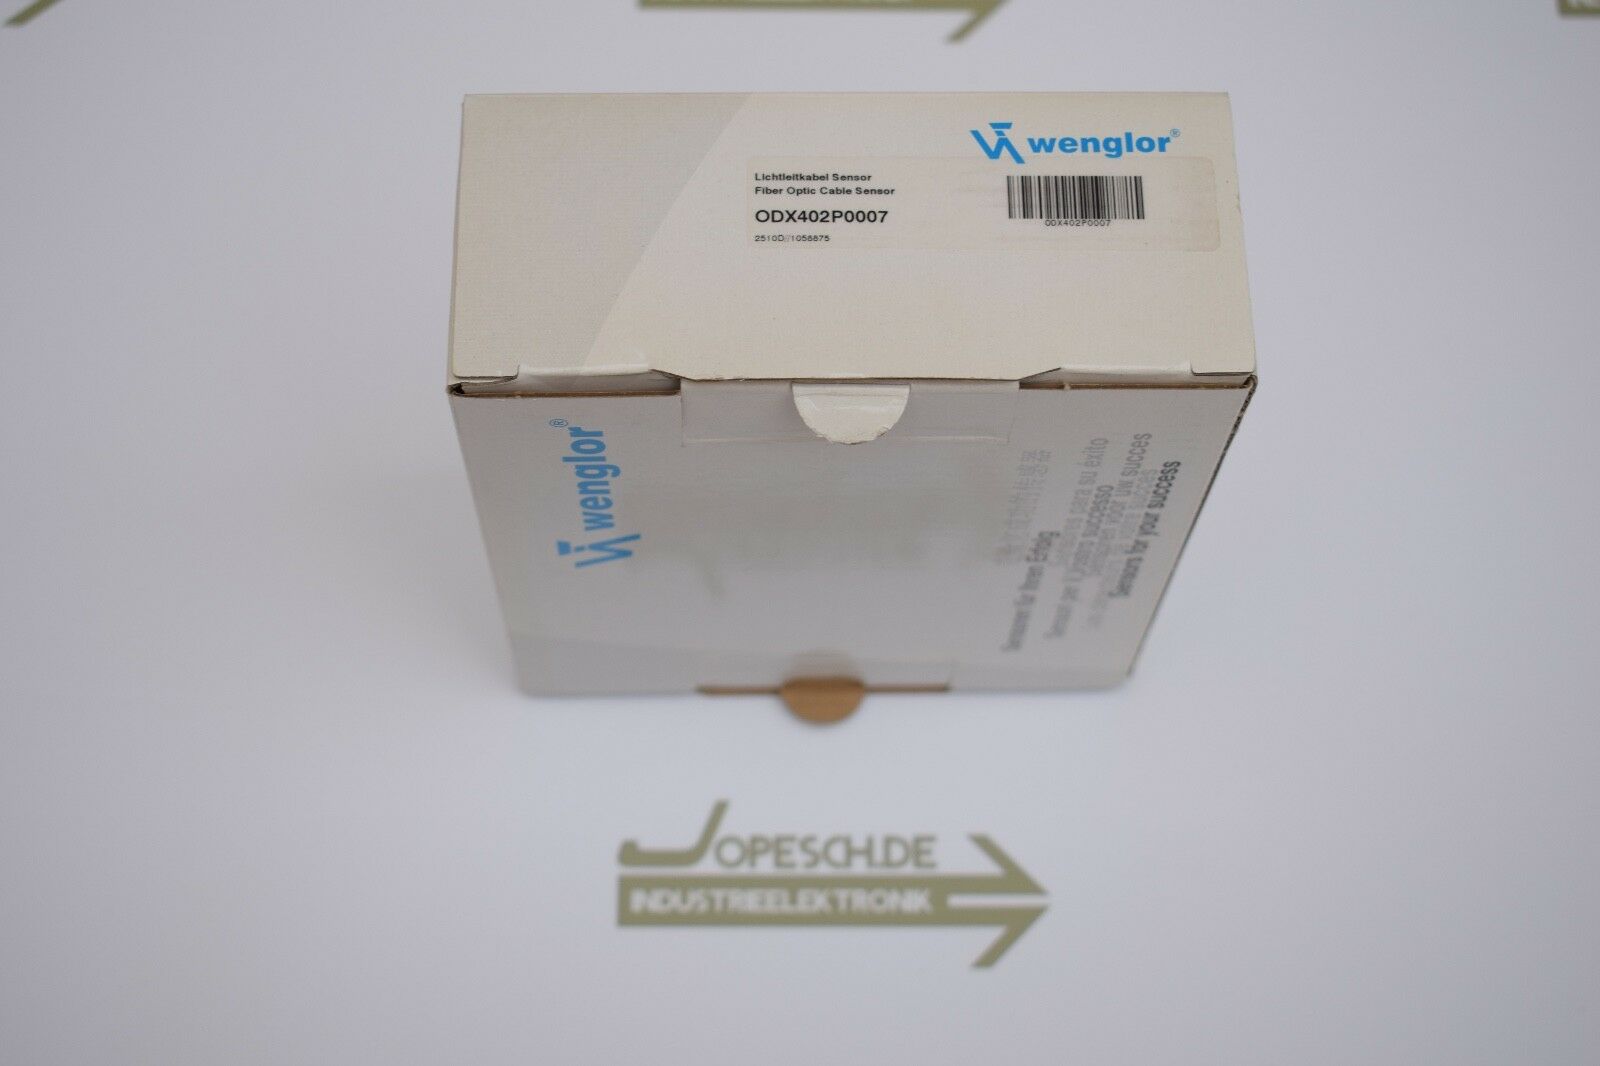 Wenglor Glasfaserkabel Sensor ODX402P0007